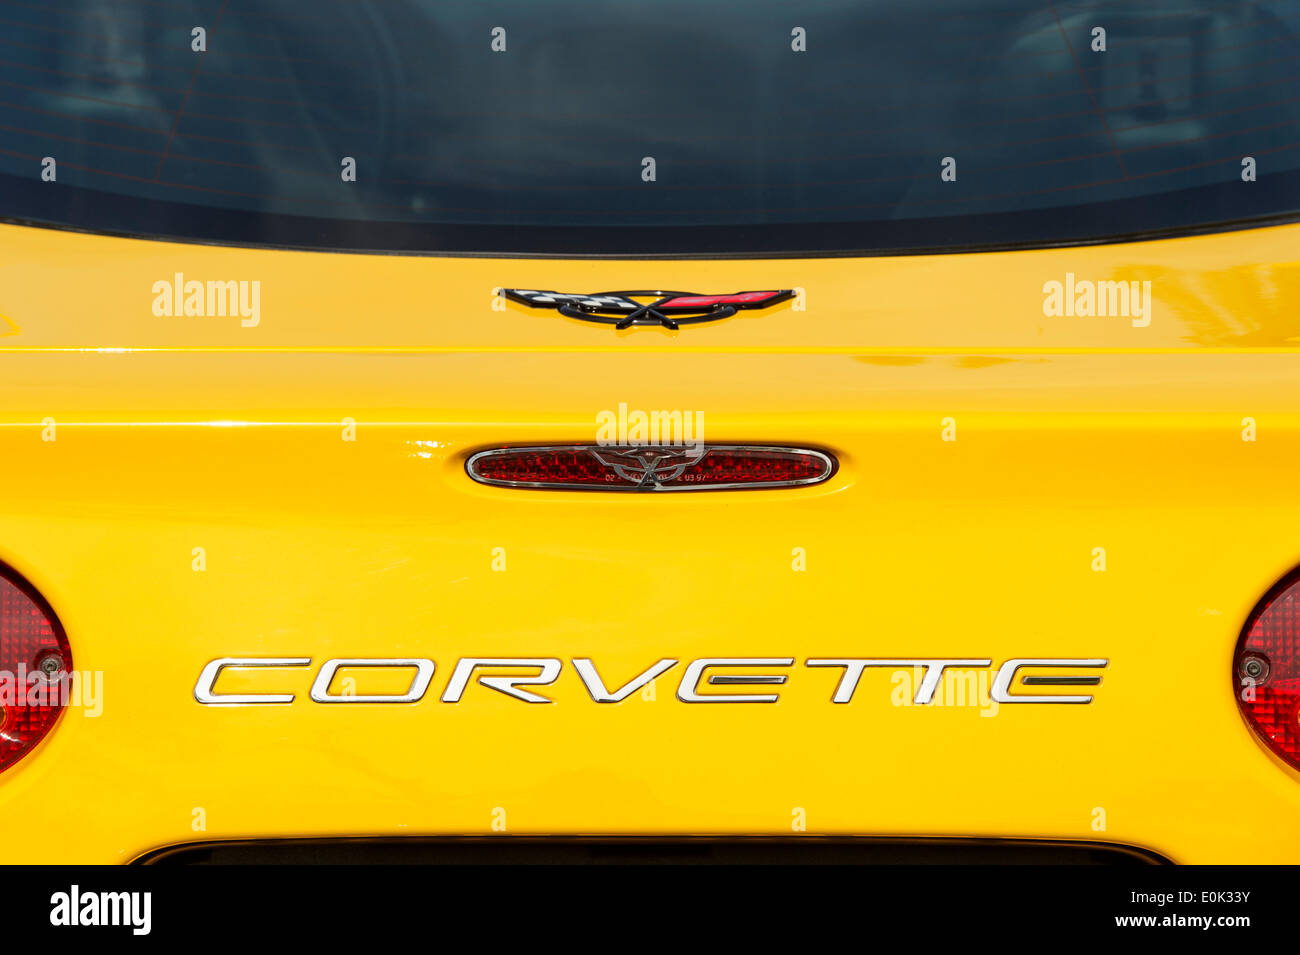 Chevrolet Corvette nome boot giallo, Classic American sports car Foto Stock